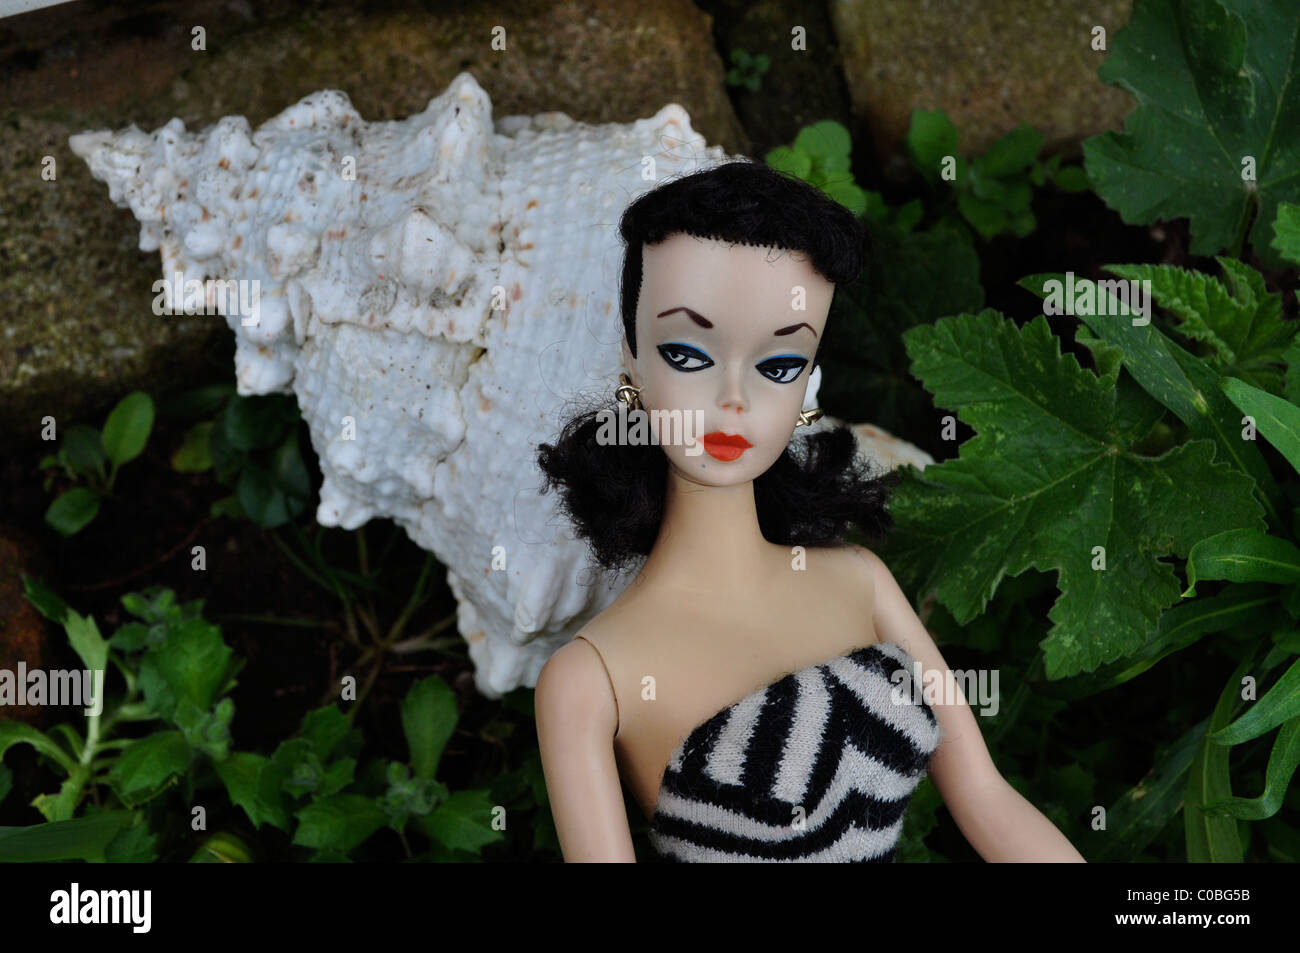 Prima bambola Barbie realizzata nel 1959 in Giappone, #1 bambola Barbie con sopracciglia arcuate, in bianco e nero vernice degli occhi e la corrispondenza tra il costume da bagno. Foto Stock